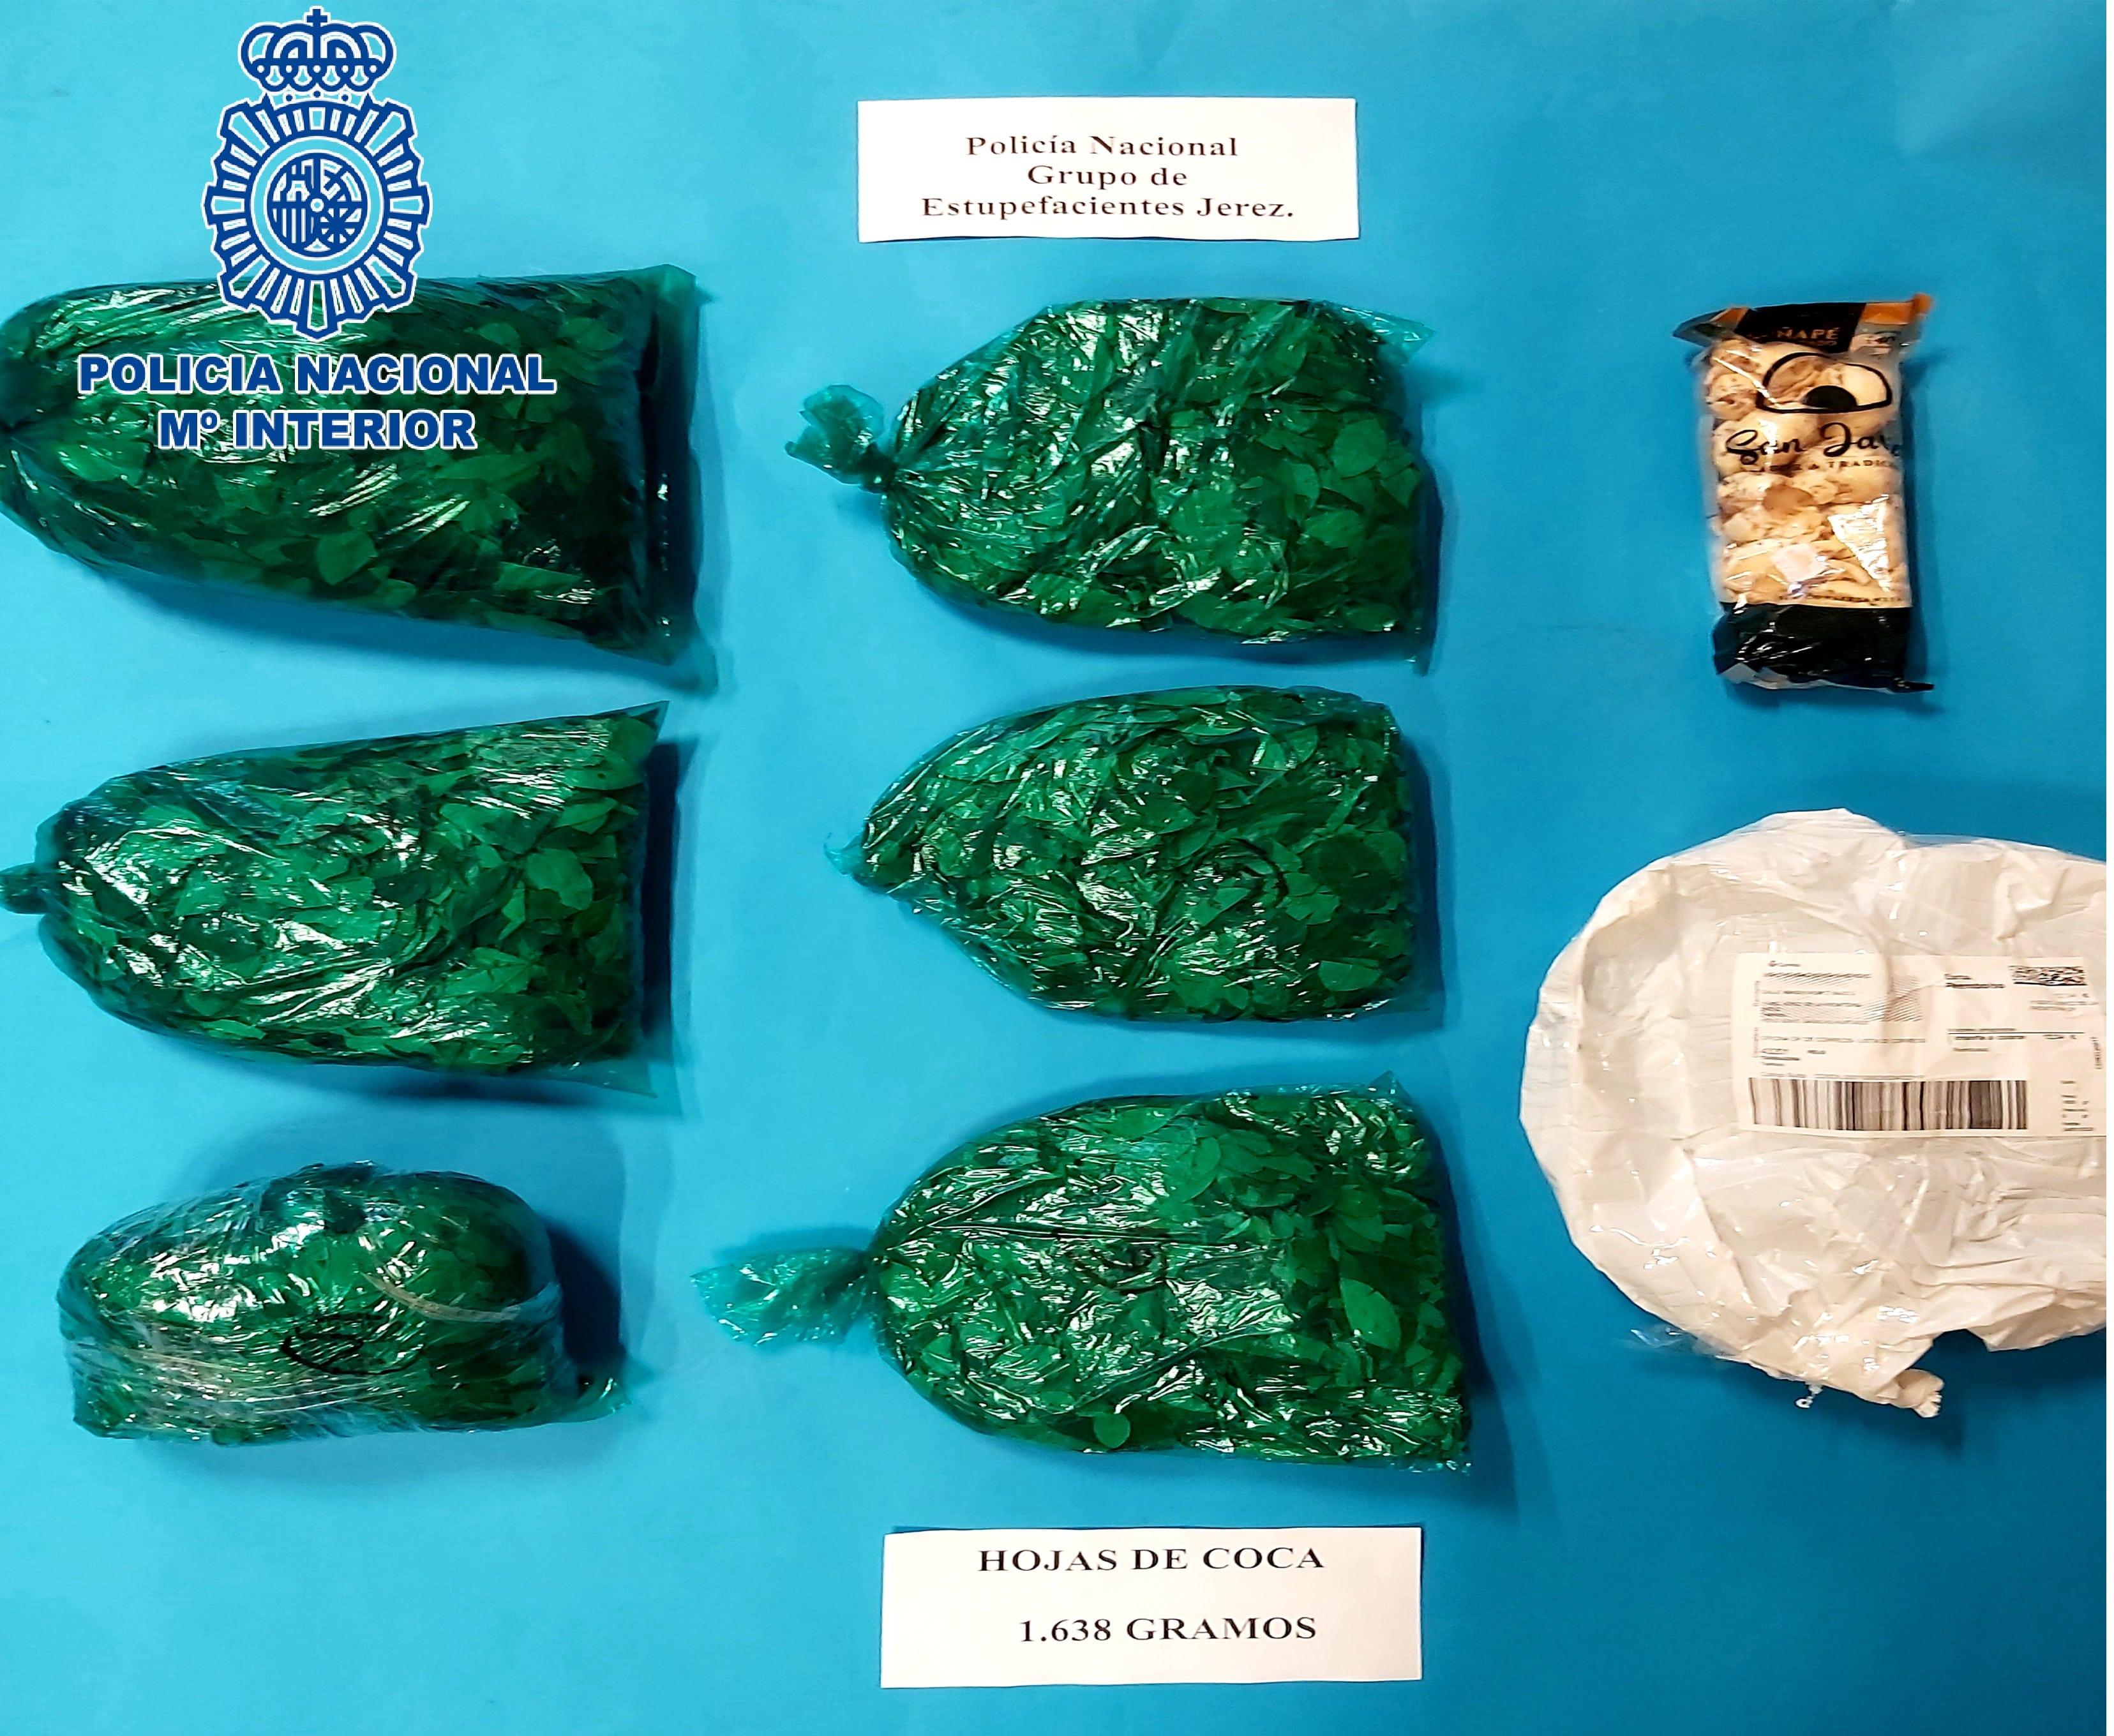 La Policía Nacional ha intervenido en Jerez 12 paquetes postales con droga en lo que va de año